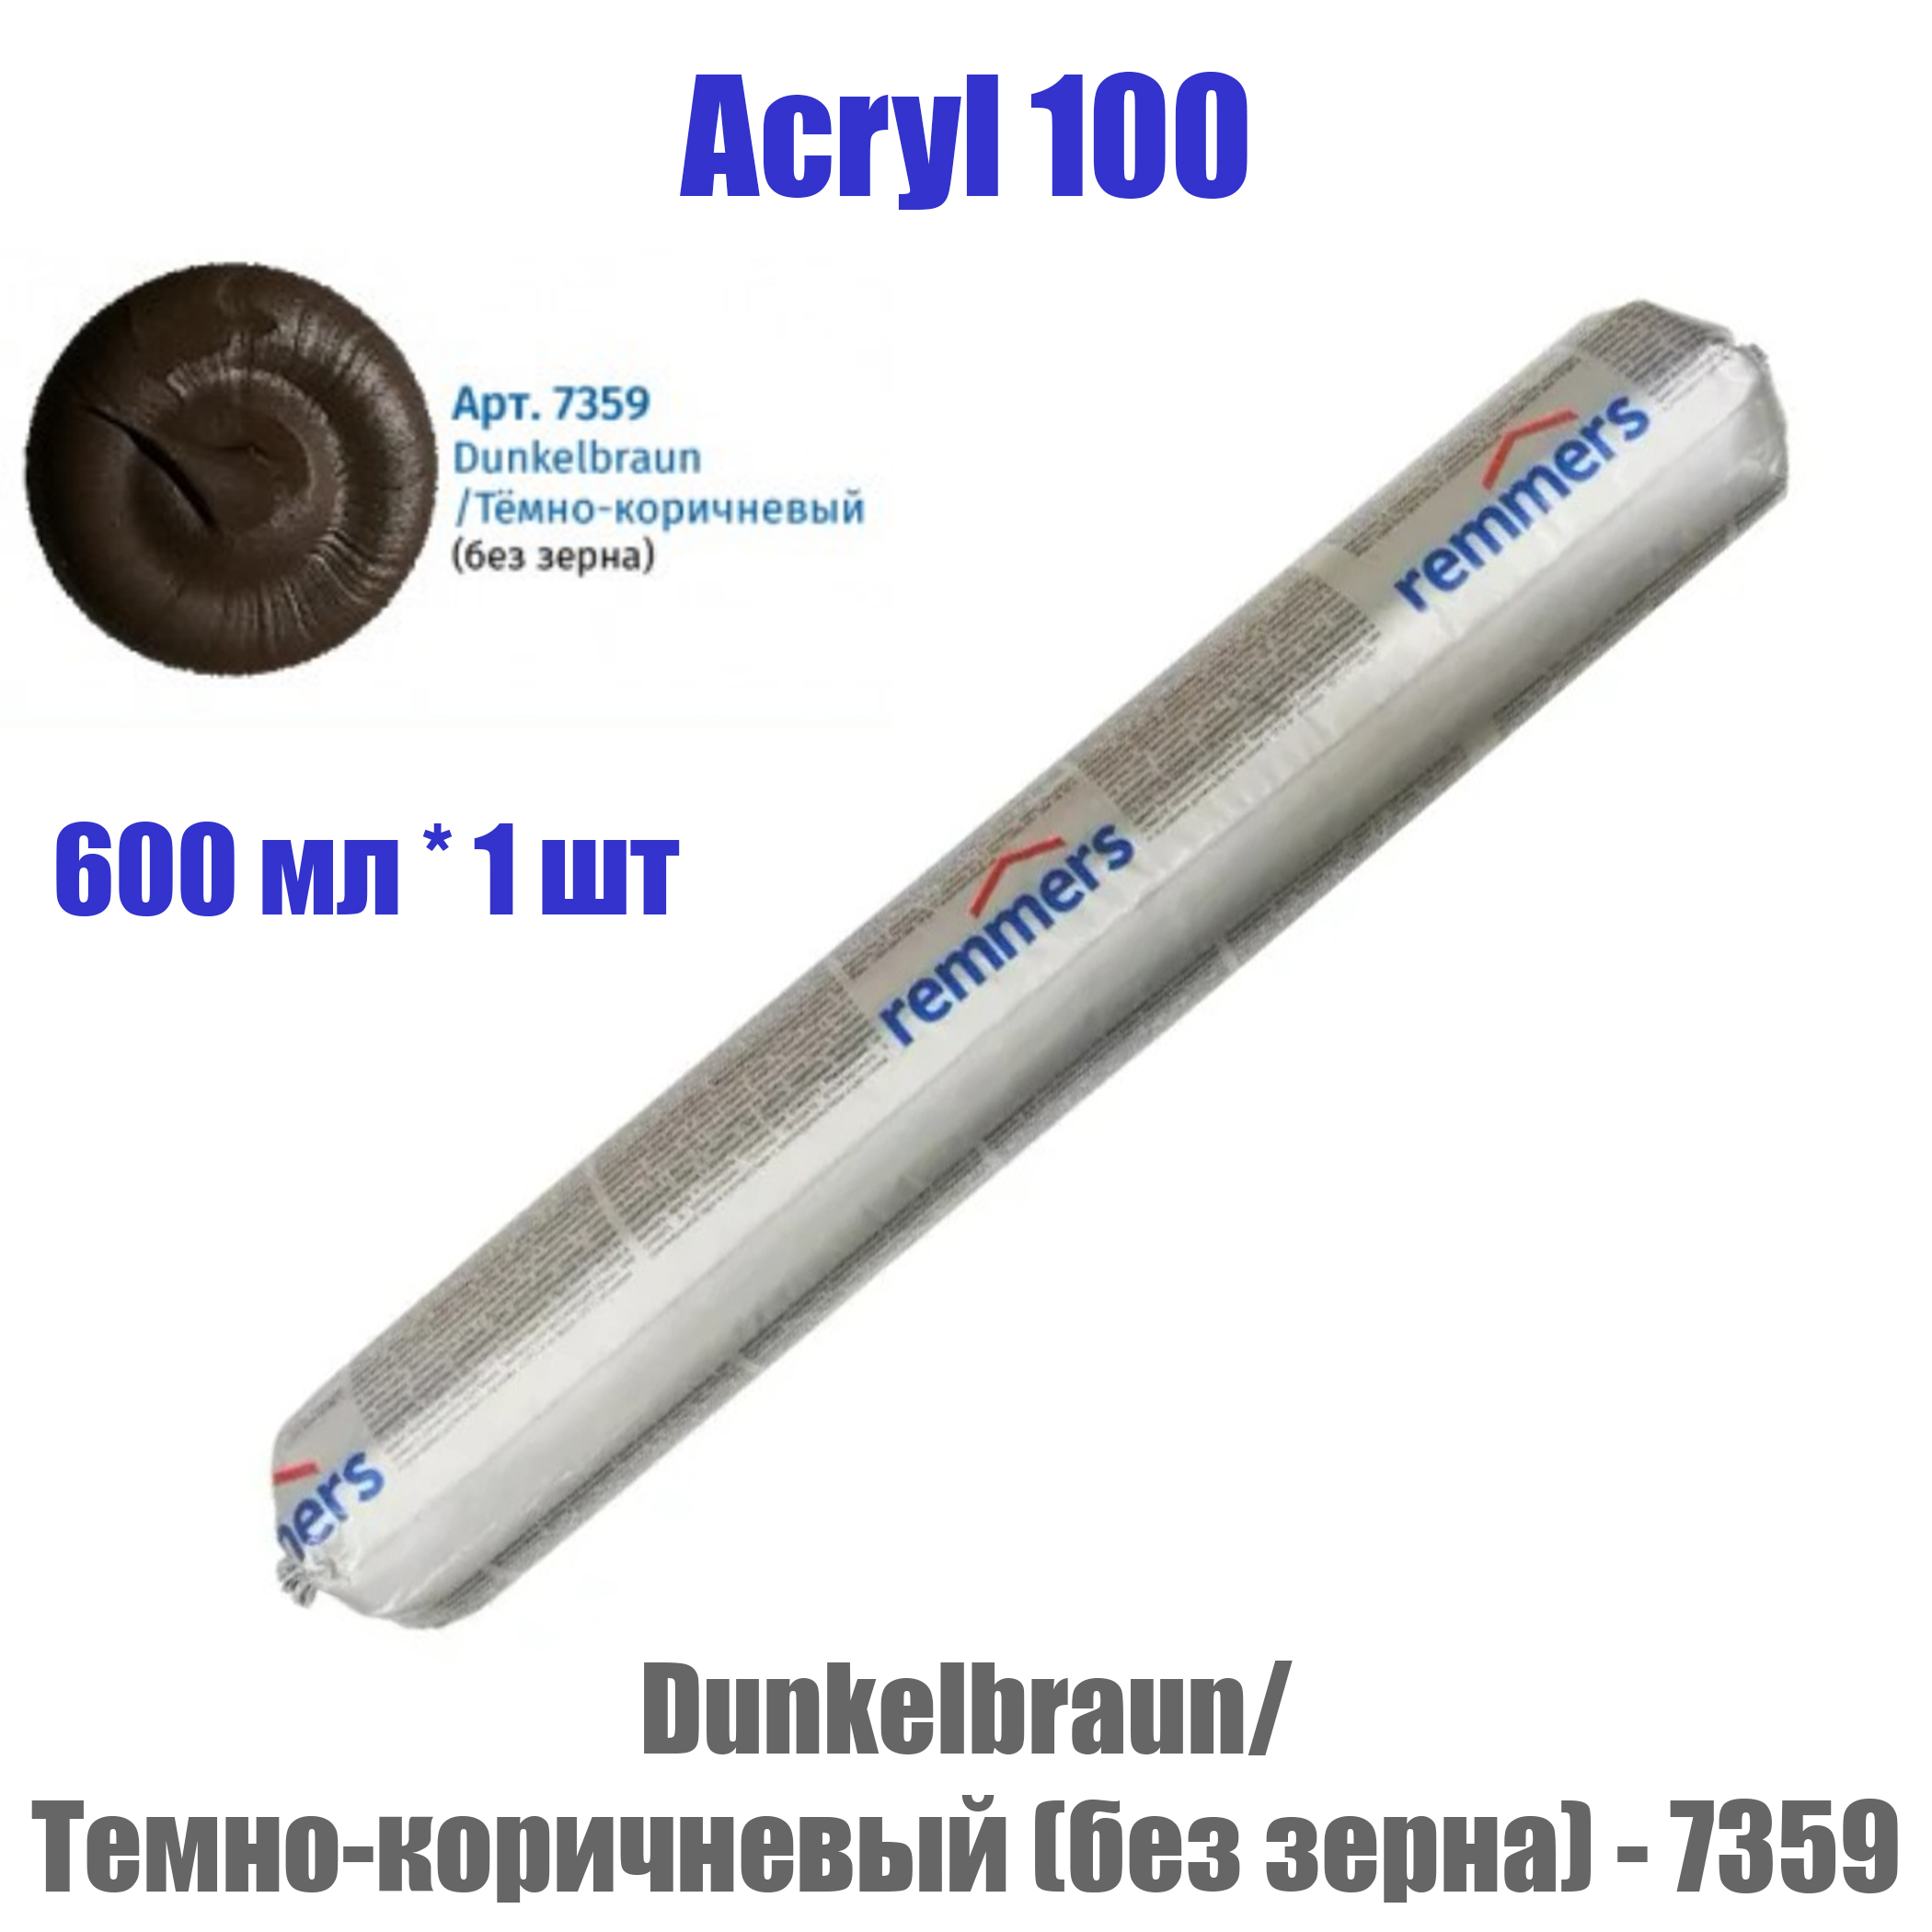 ACRYL 100 герметик для дерева Реммерс Акрил 100 темно-коричневый